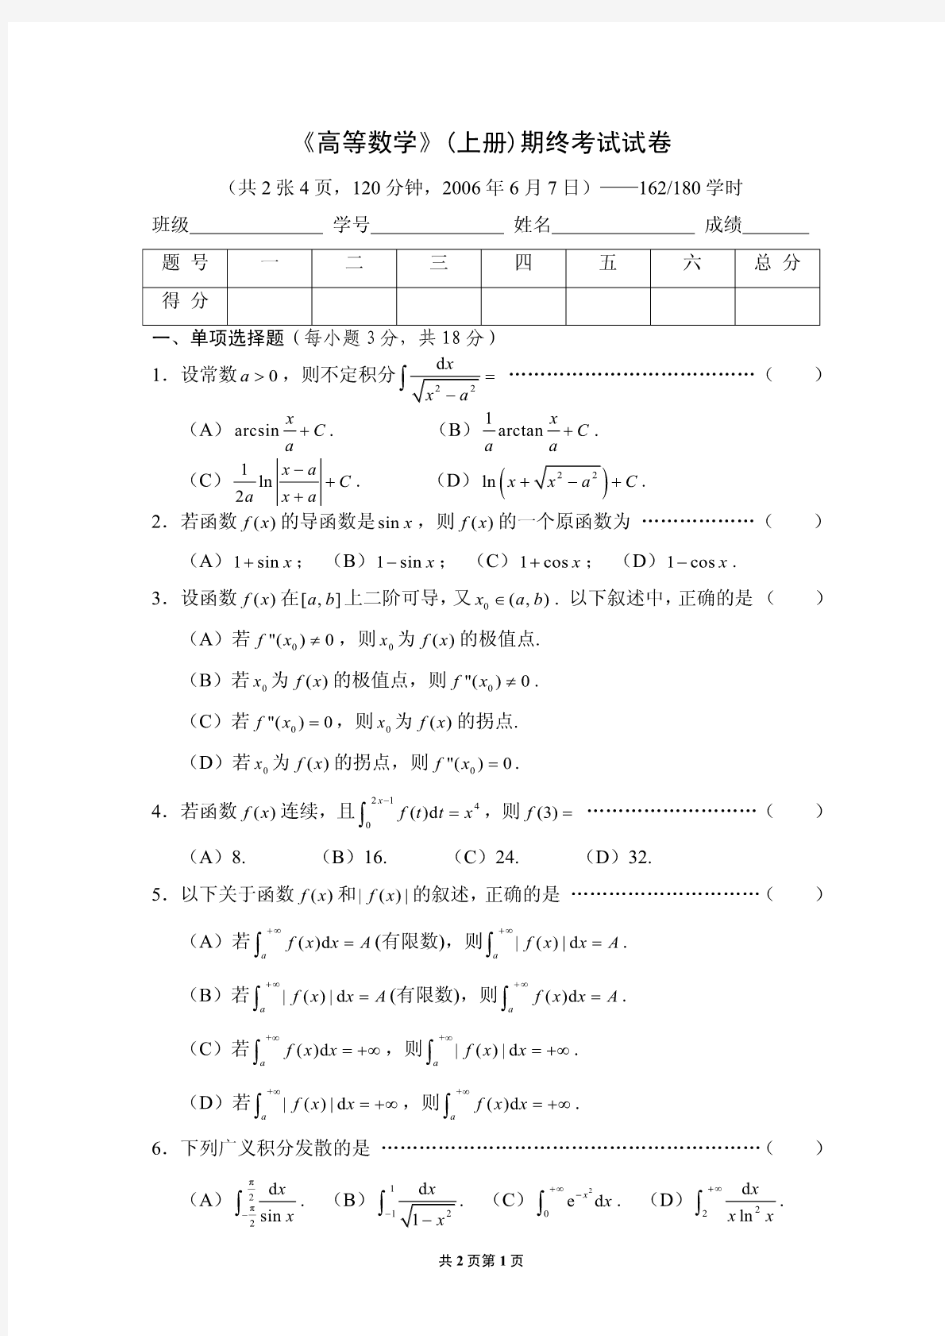 上海交通大学微积分(上册)教学试卷期终试卷